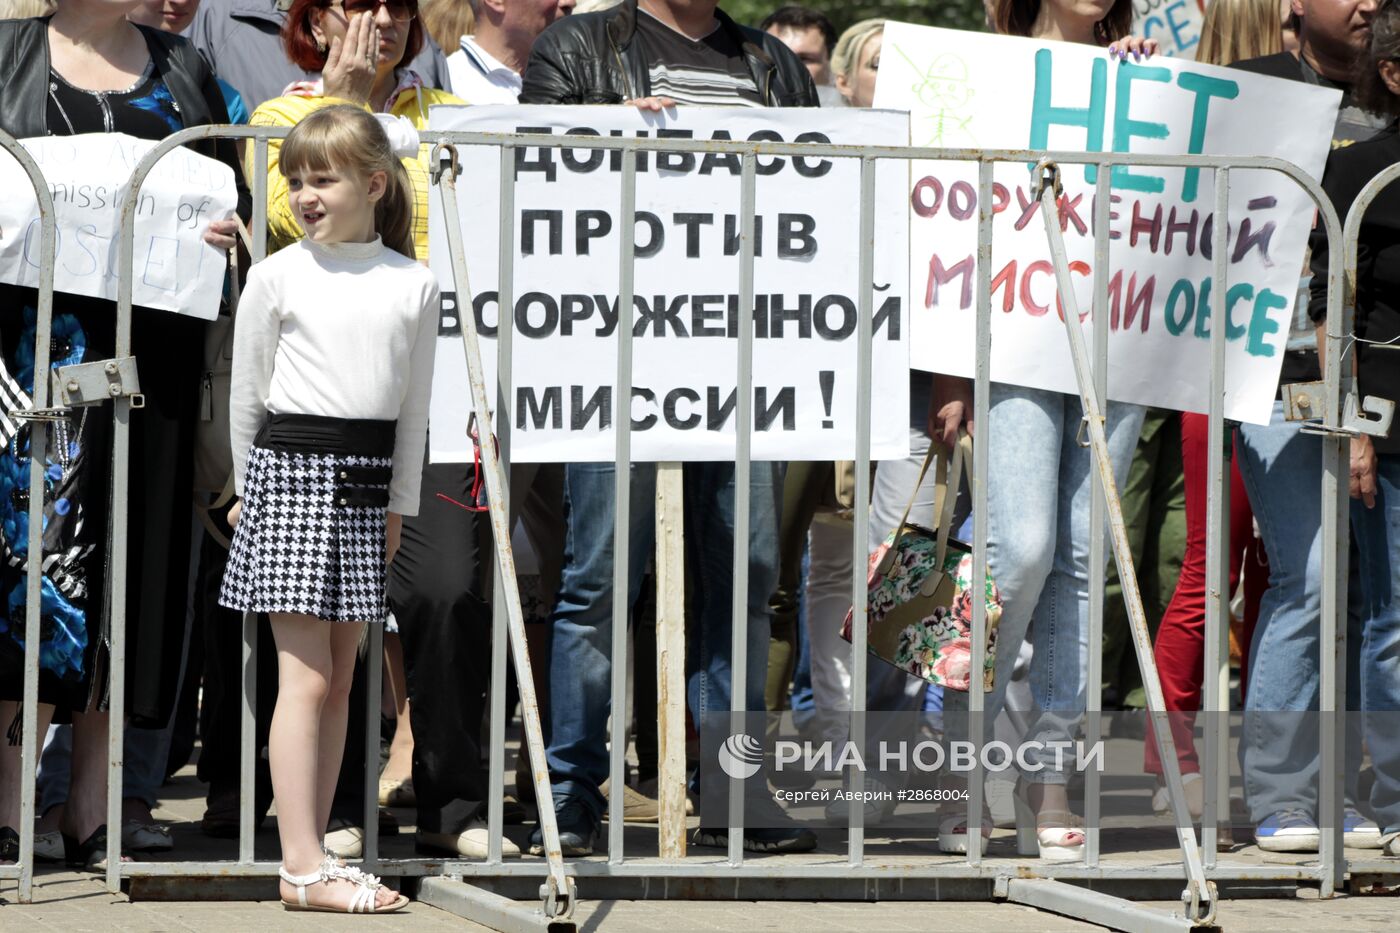 Митинг протеста в Донецке против ввода в Донбасс вооруженной миссии ОБСЕ